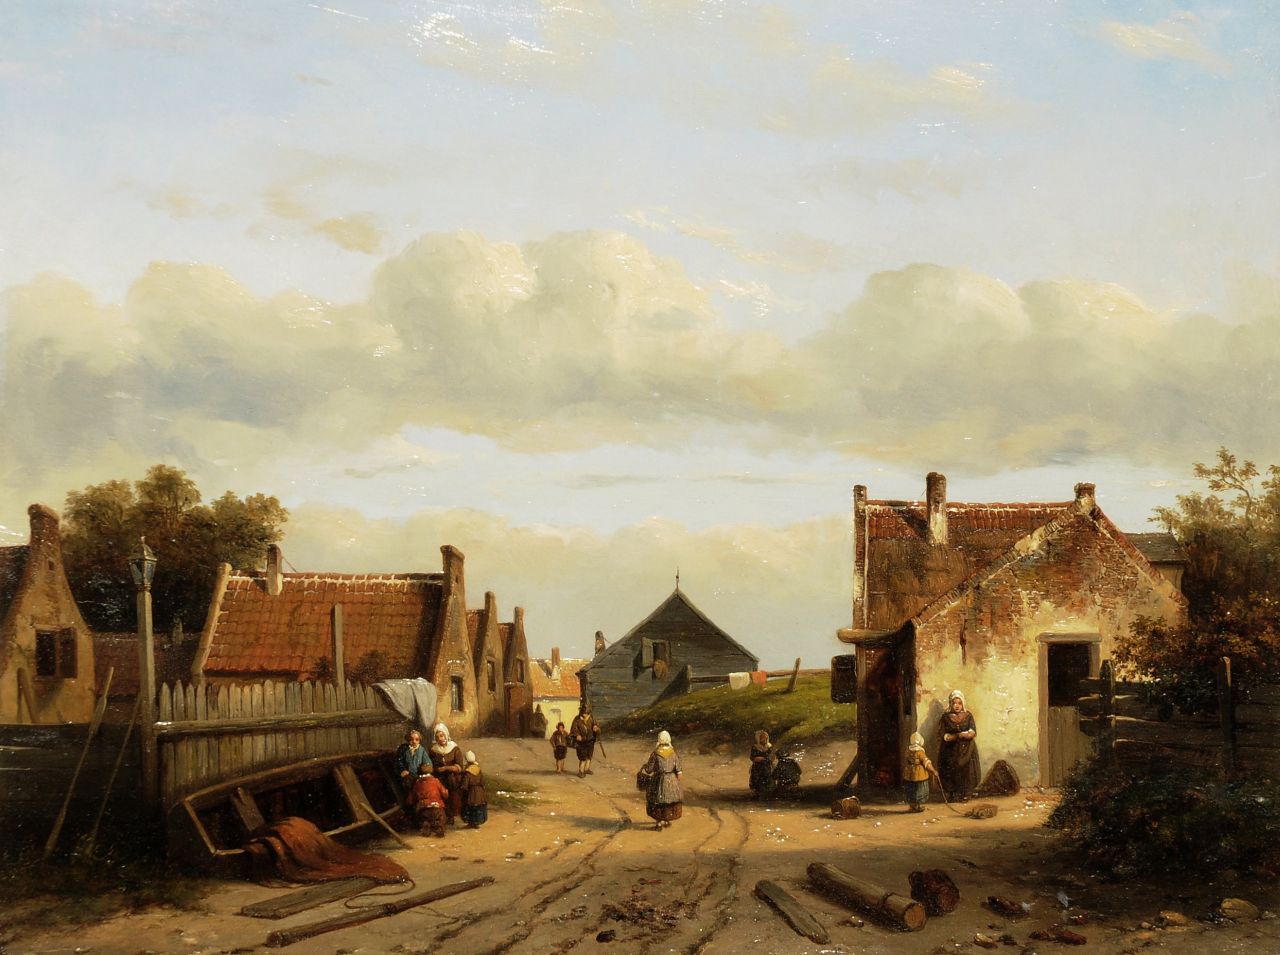 Leickert C.H.J.  | 'Charles' Henri Joseph Leickert | Schilderijen te koop aangeboden | Bedrijvigheid in Hollands dorpje aan de kust, olieverf op paneel 30,2 x 39,8 cm, gedateerd 1851